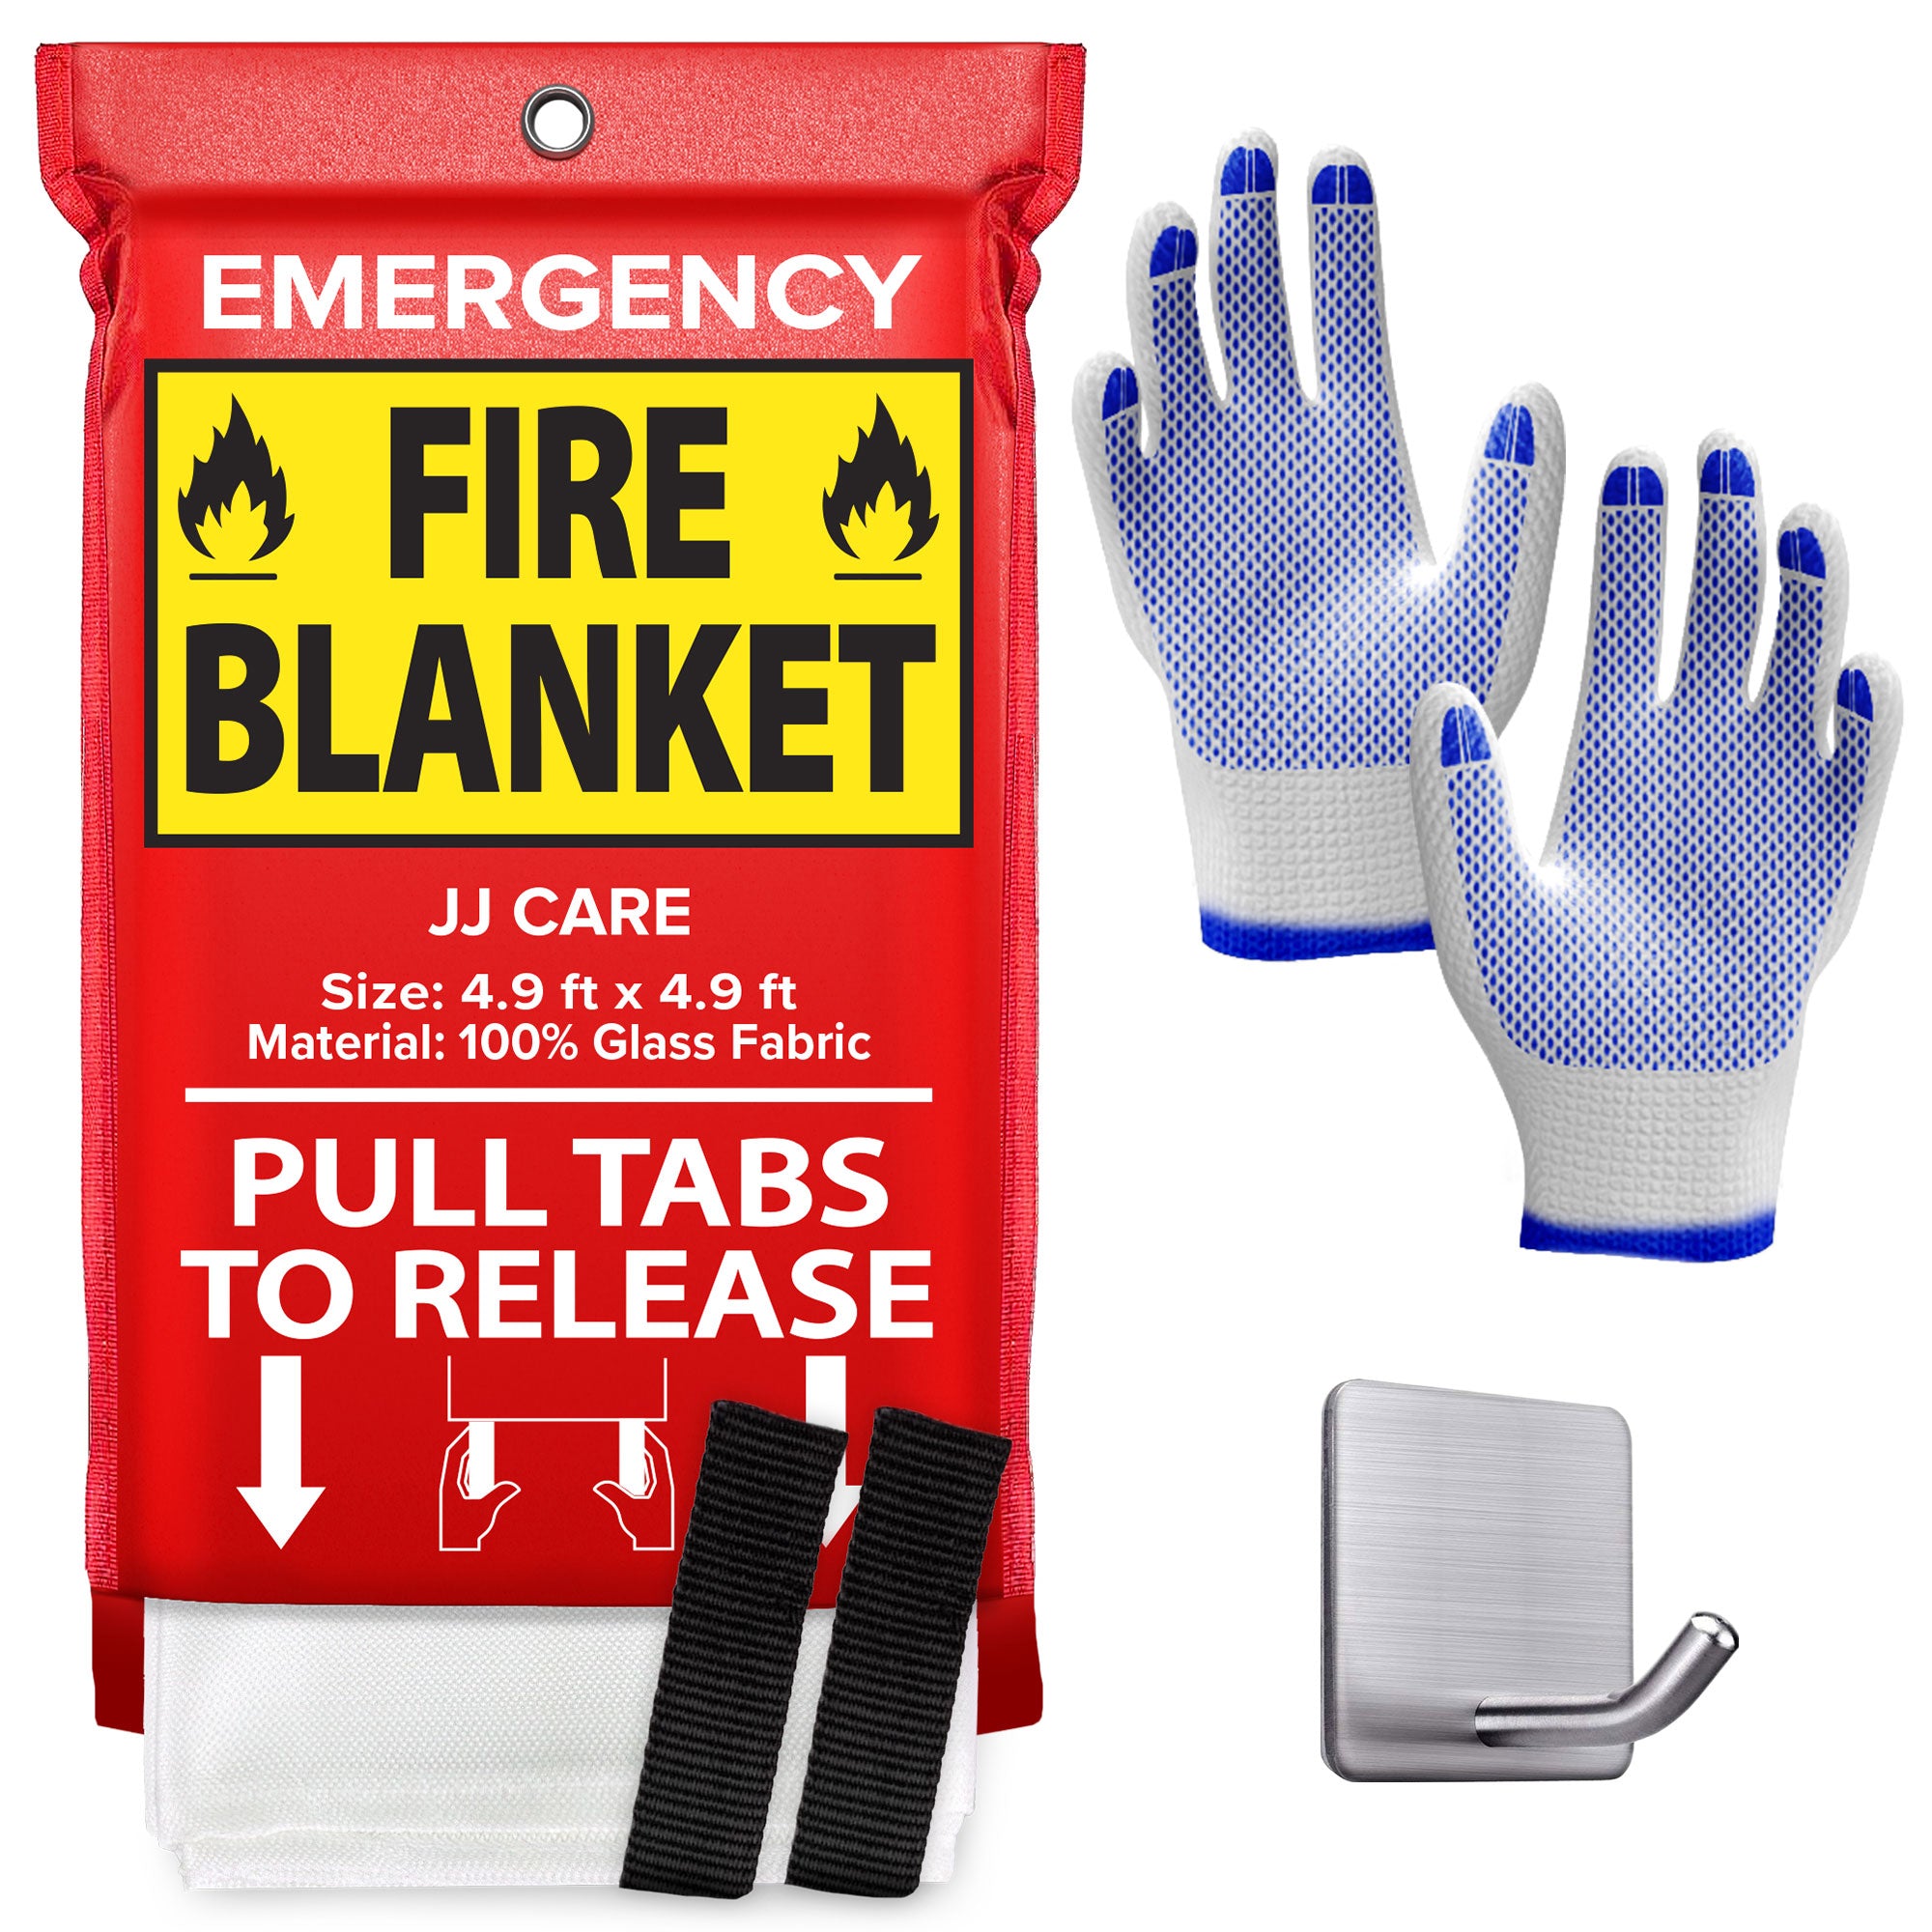 JJ CARE Fire Blanket – JJ CARE USA